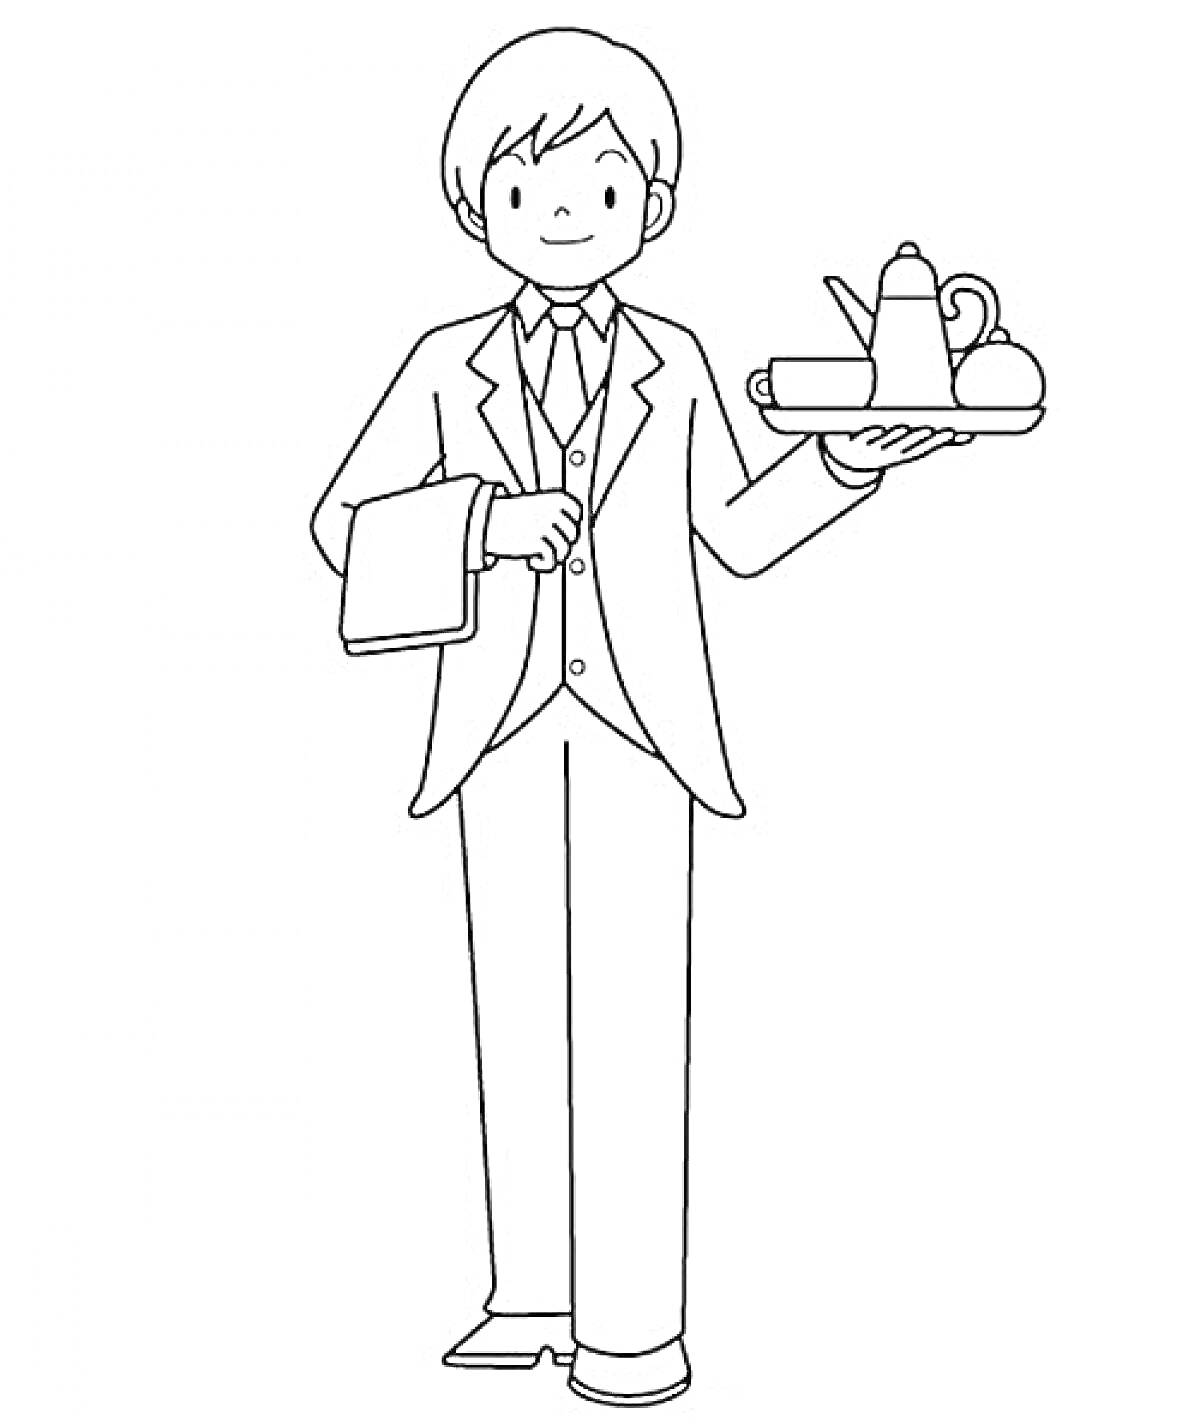 Официант с подносом с чайником, чашкой и блюдцем, держит полотенце